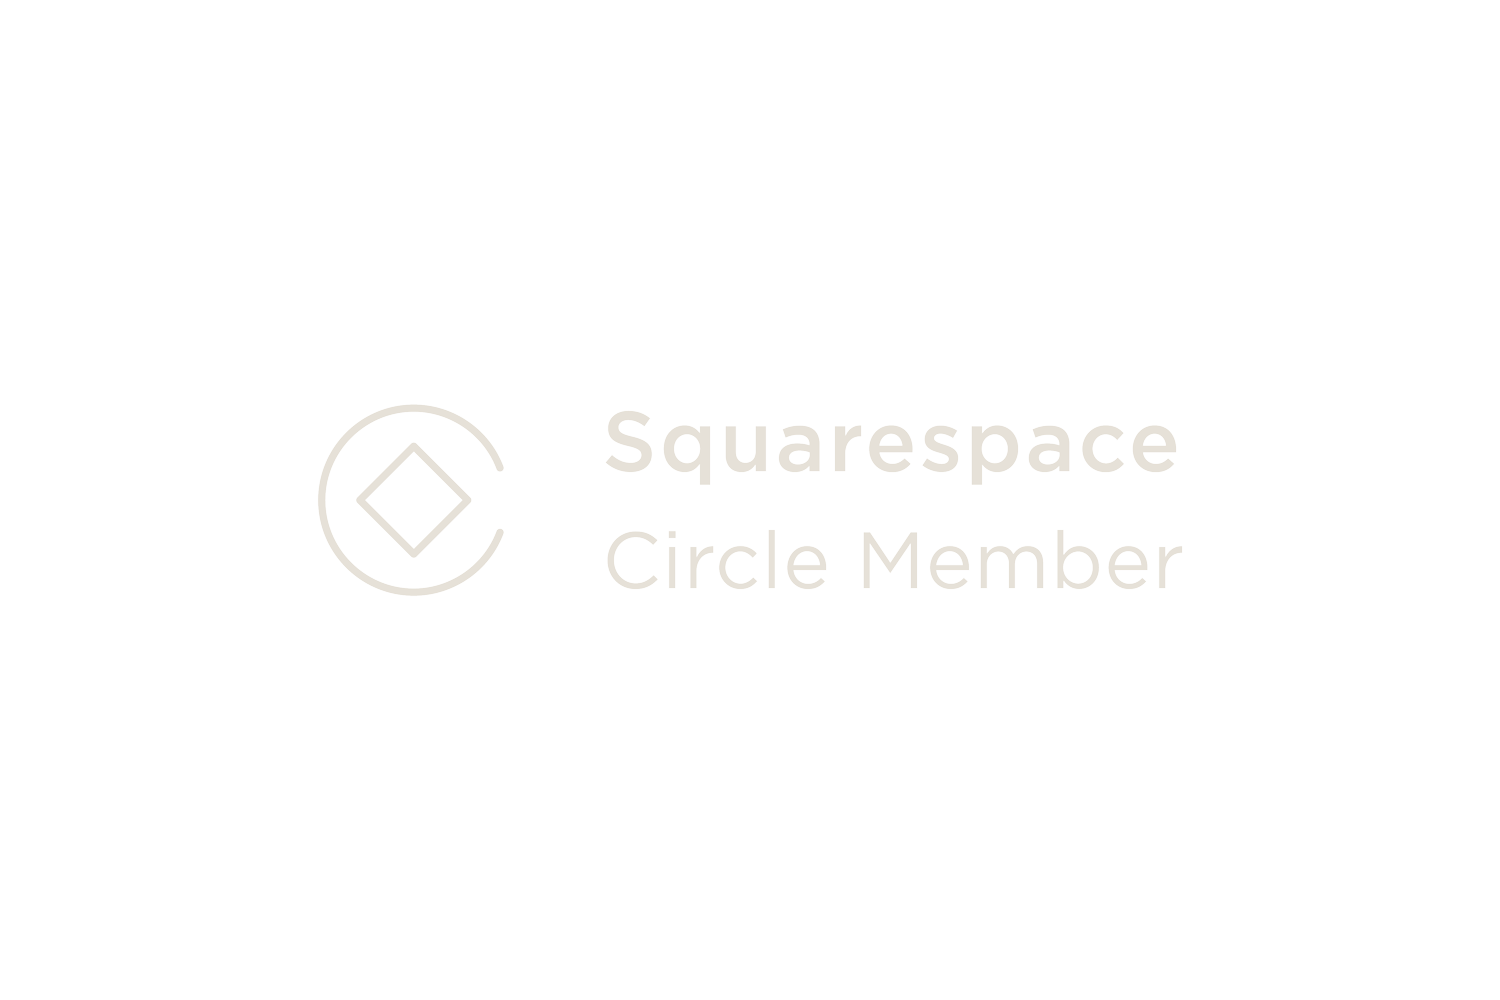 sqsp-circle-member-标志.png